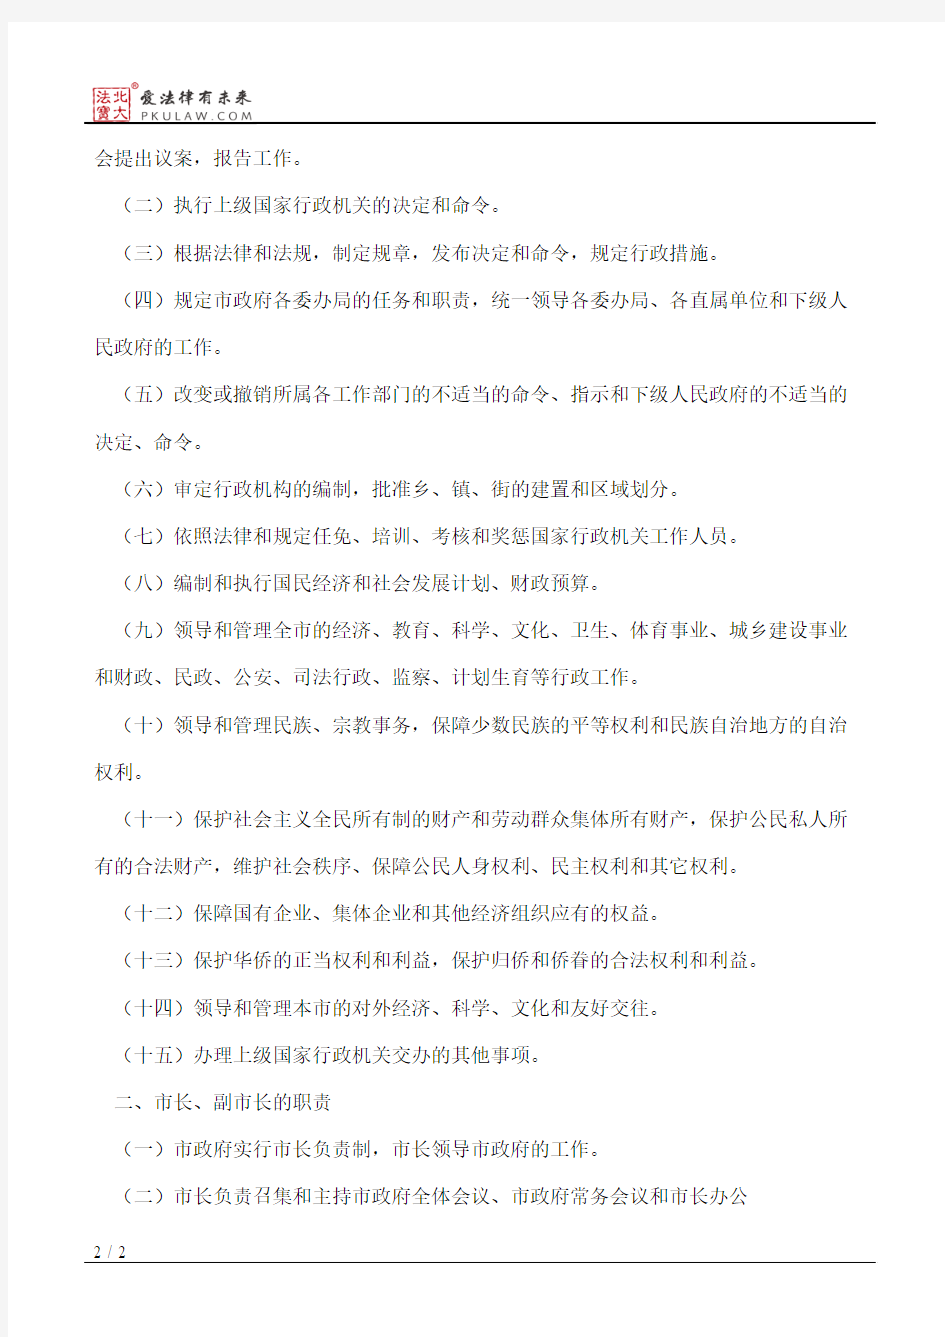 天津市人民政府印发《天津市人民政府工作规则》的通知